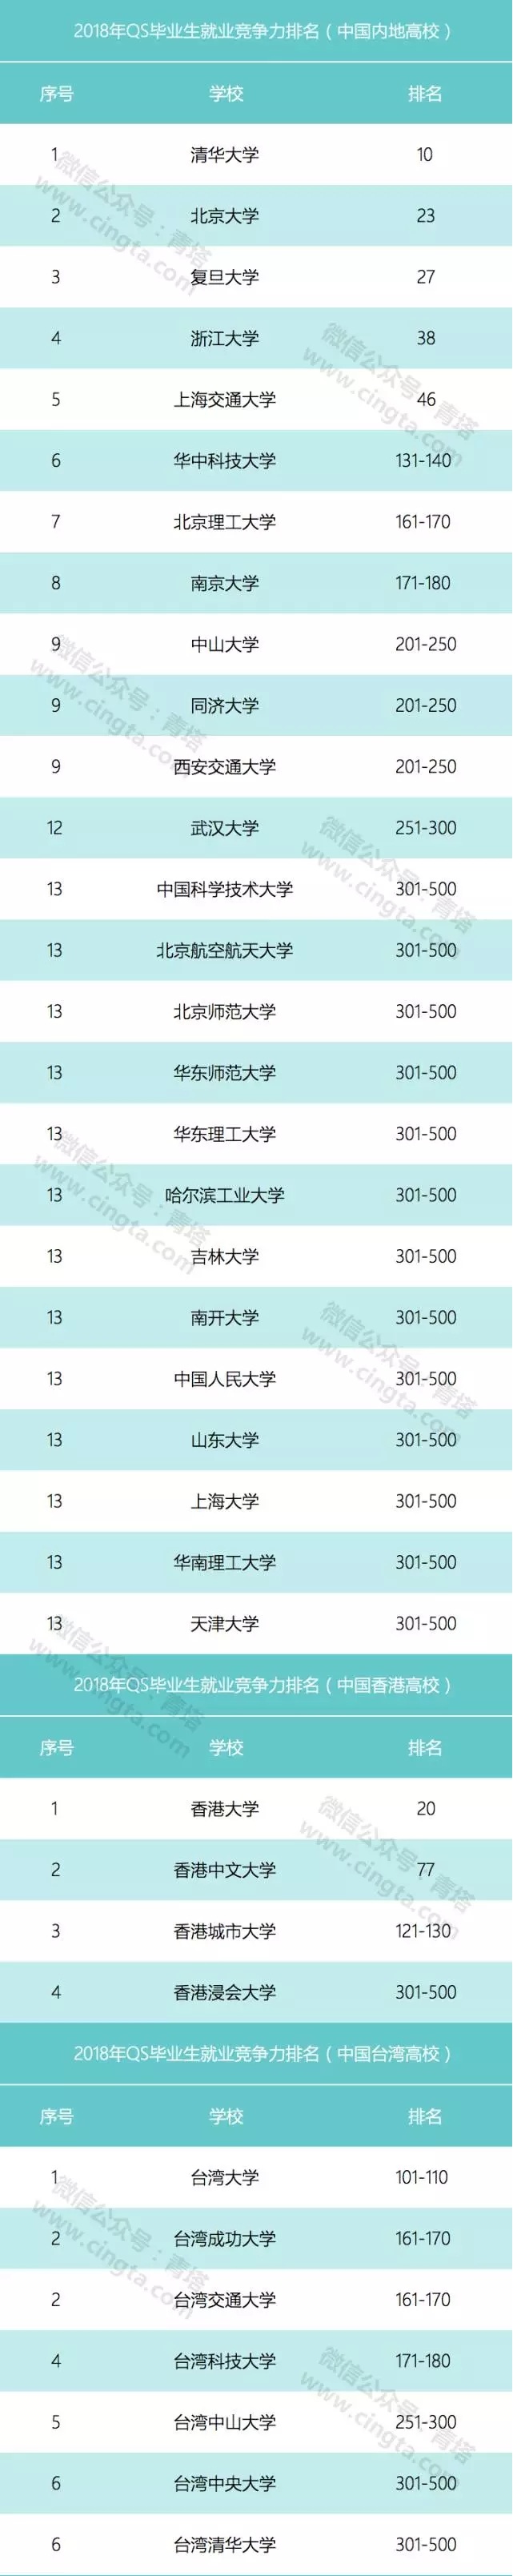 QS发布2018全球毕业生就业竞争力排名 中国36所高校上榜2